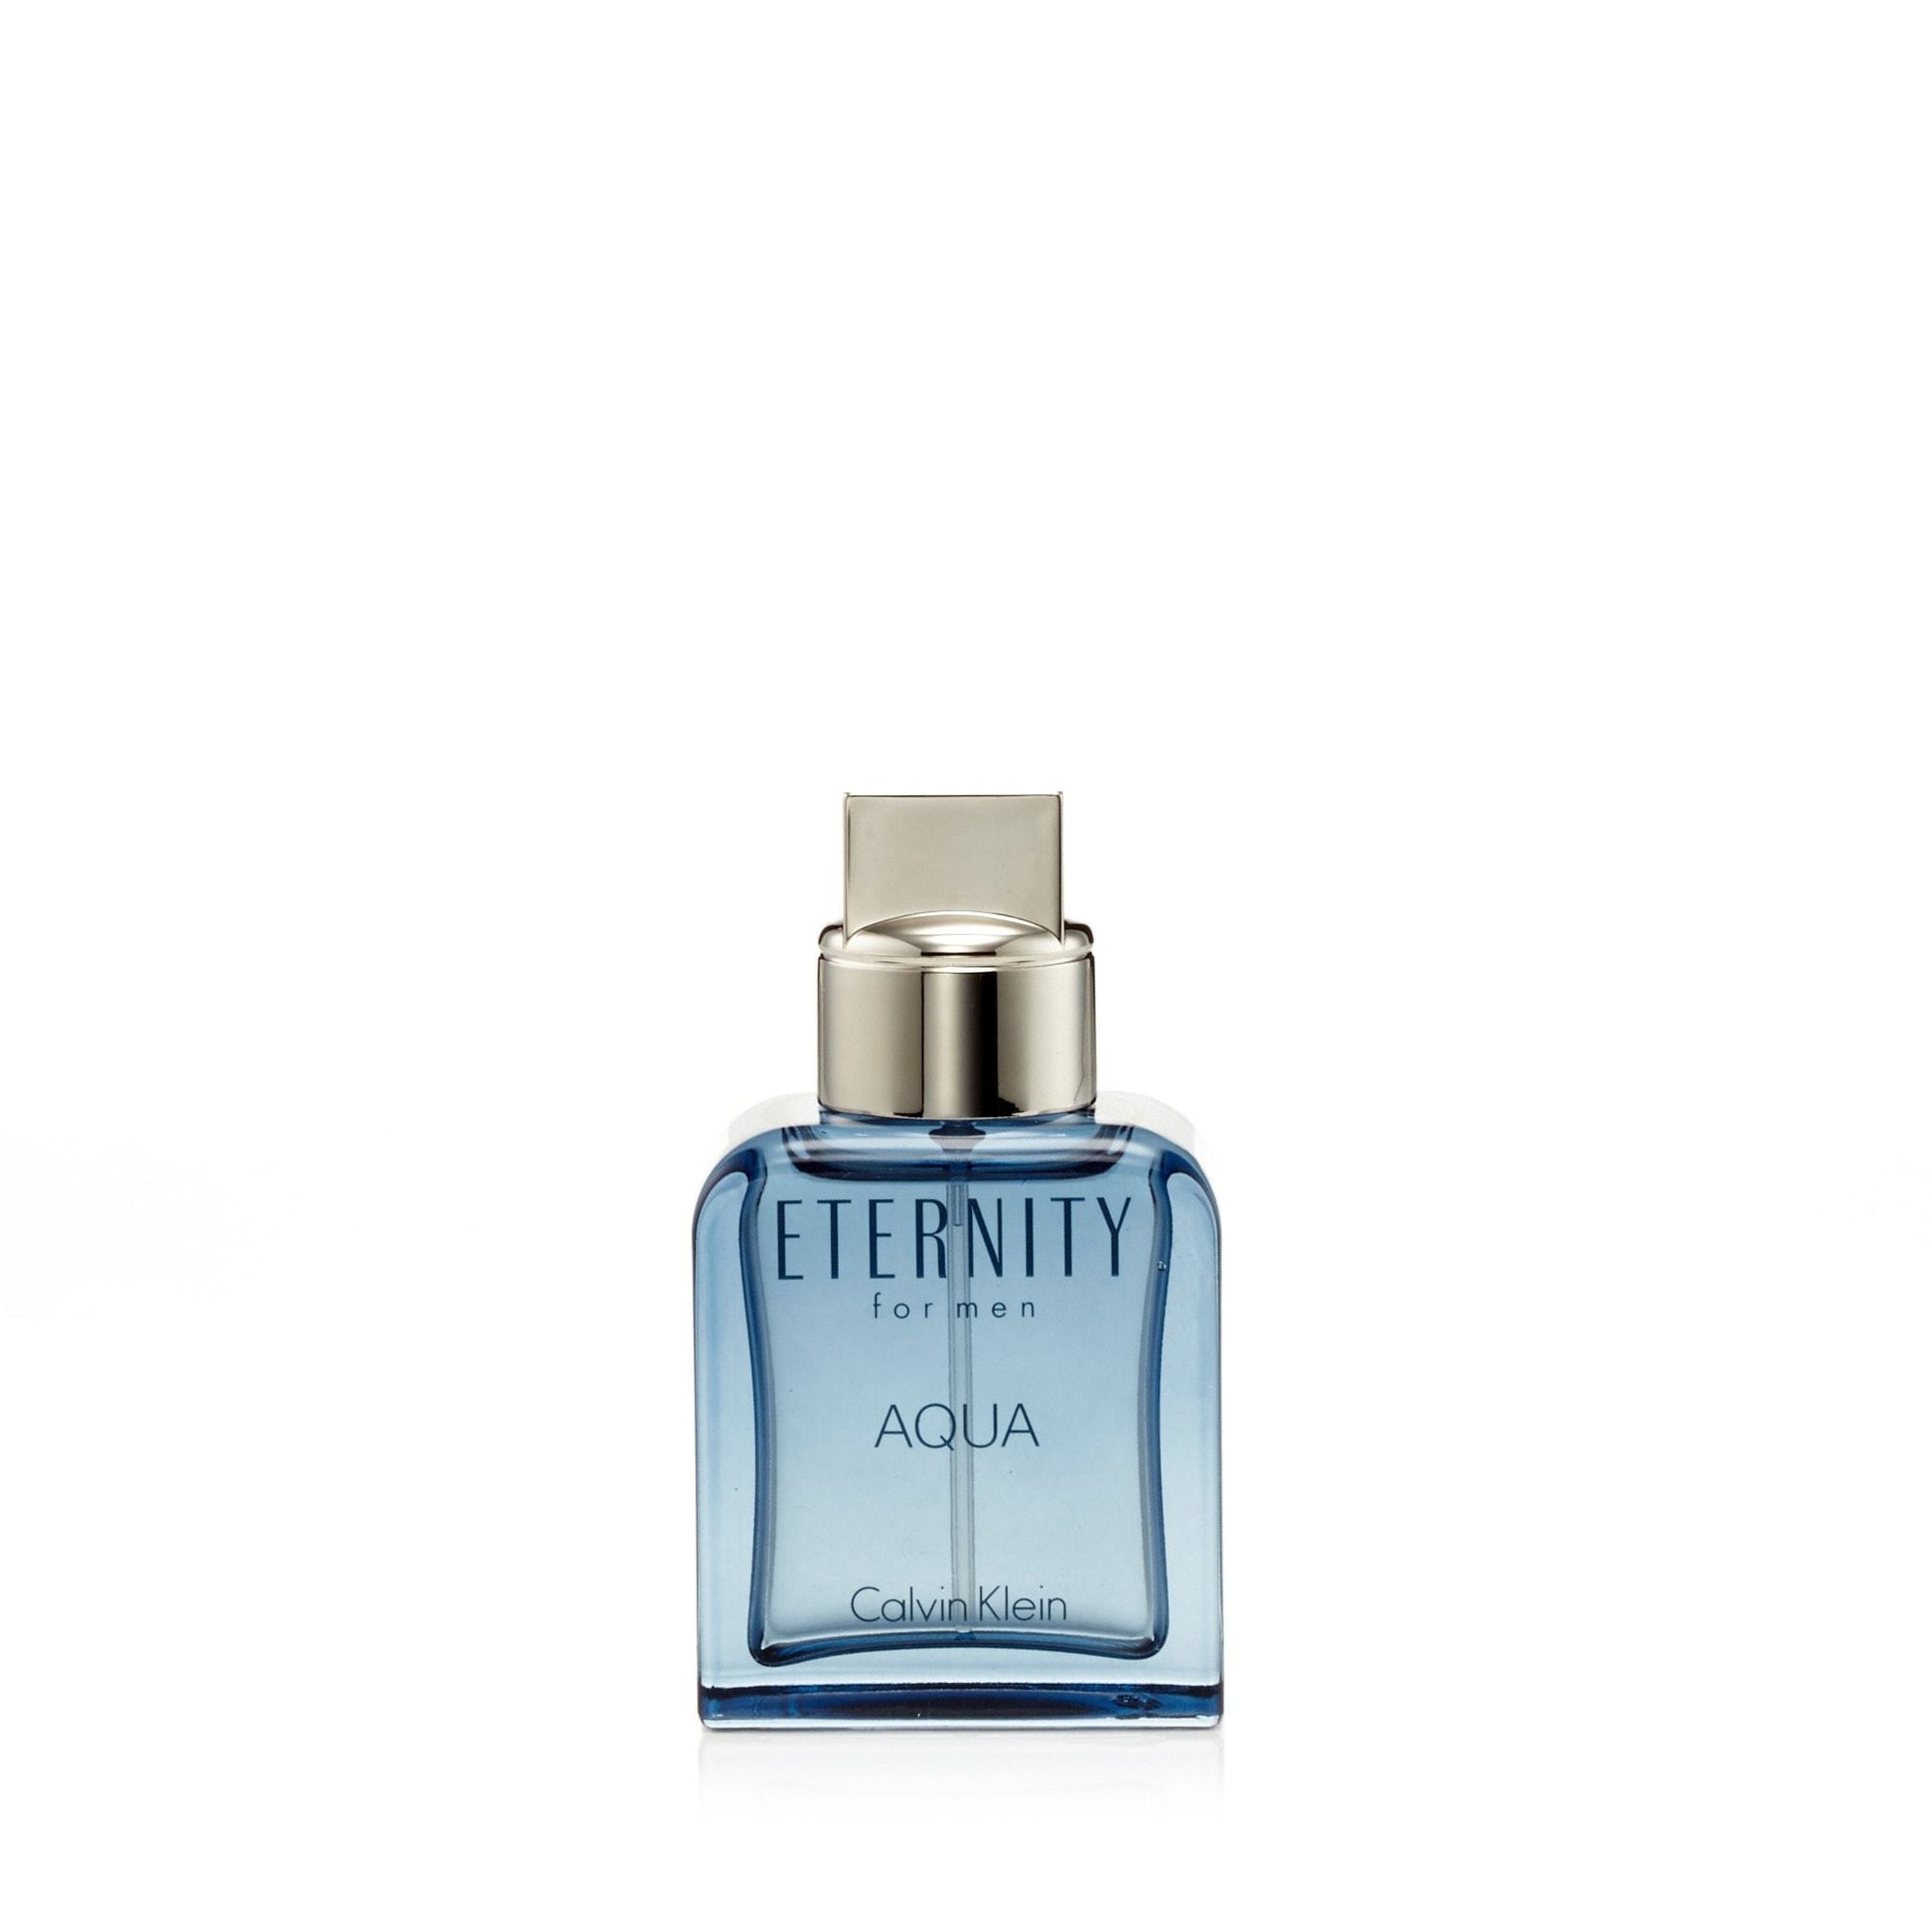 Eternity Aqua Eau de Toilette Spray for Men by Calvin Klein, Product image 3